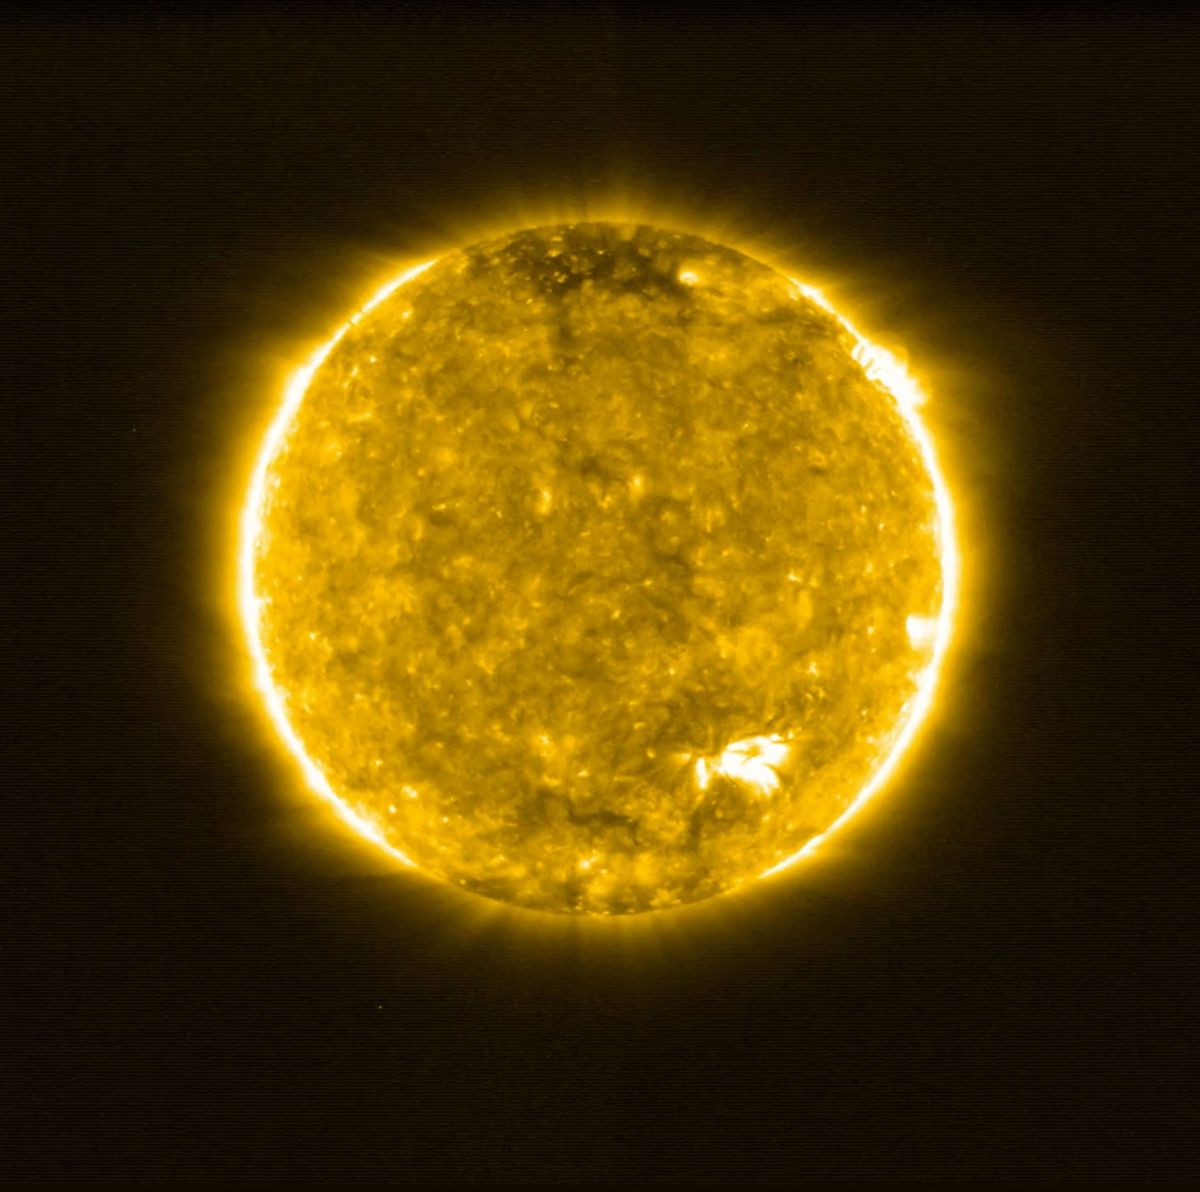 Deze opname van de zon in extreem ultraviolet werd op 30 mei 2020 gemaakt door het ruimtevaartuig Solar Orbiter van de ESA Opnamen in deze golflengte werpen licht op de doorschijnende en ijle bovenste atmosfeer van de zon de corona die een temperatuur van meer dan 556000 graden Celsius bereikt